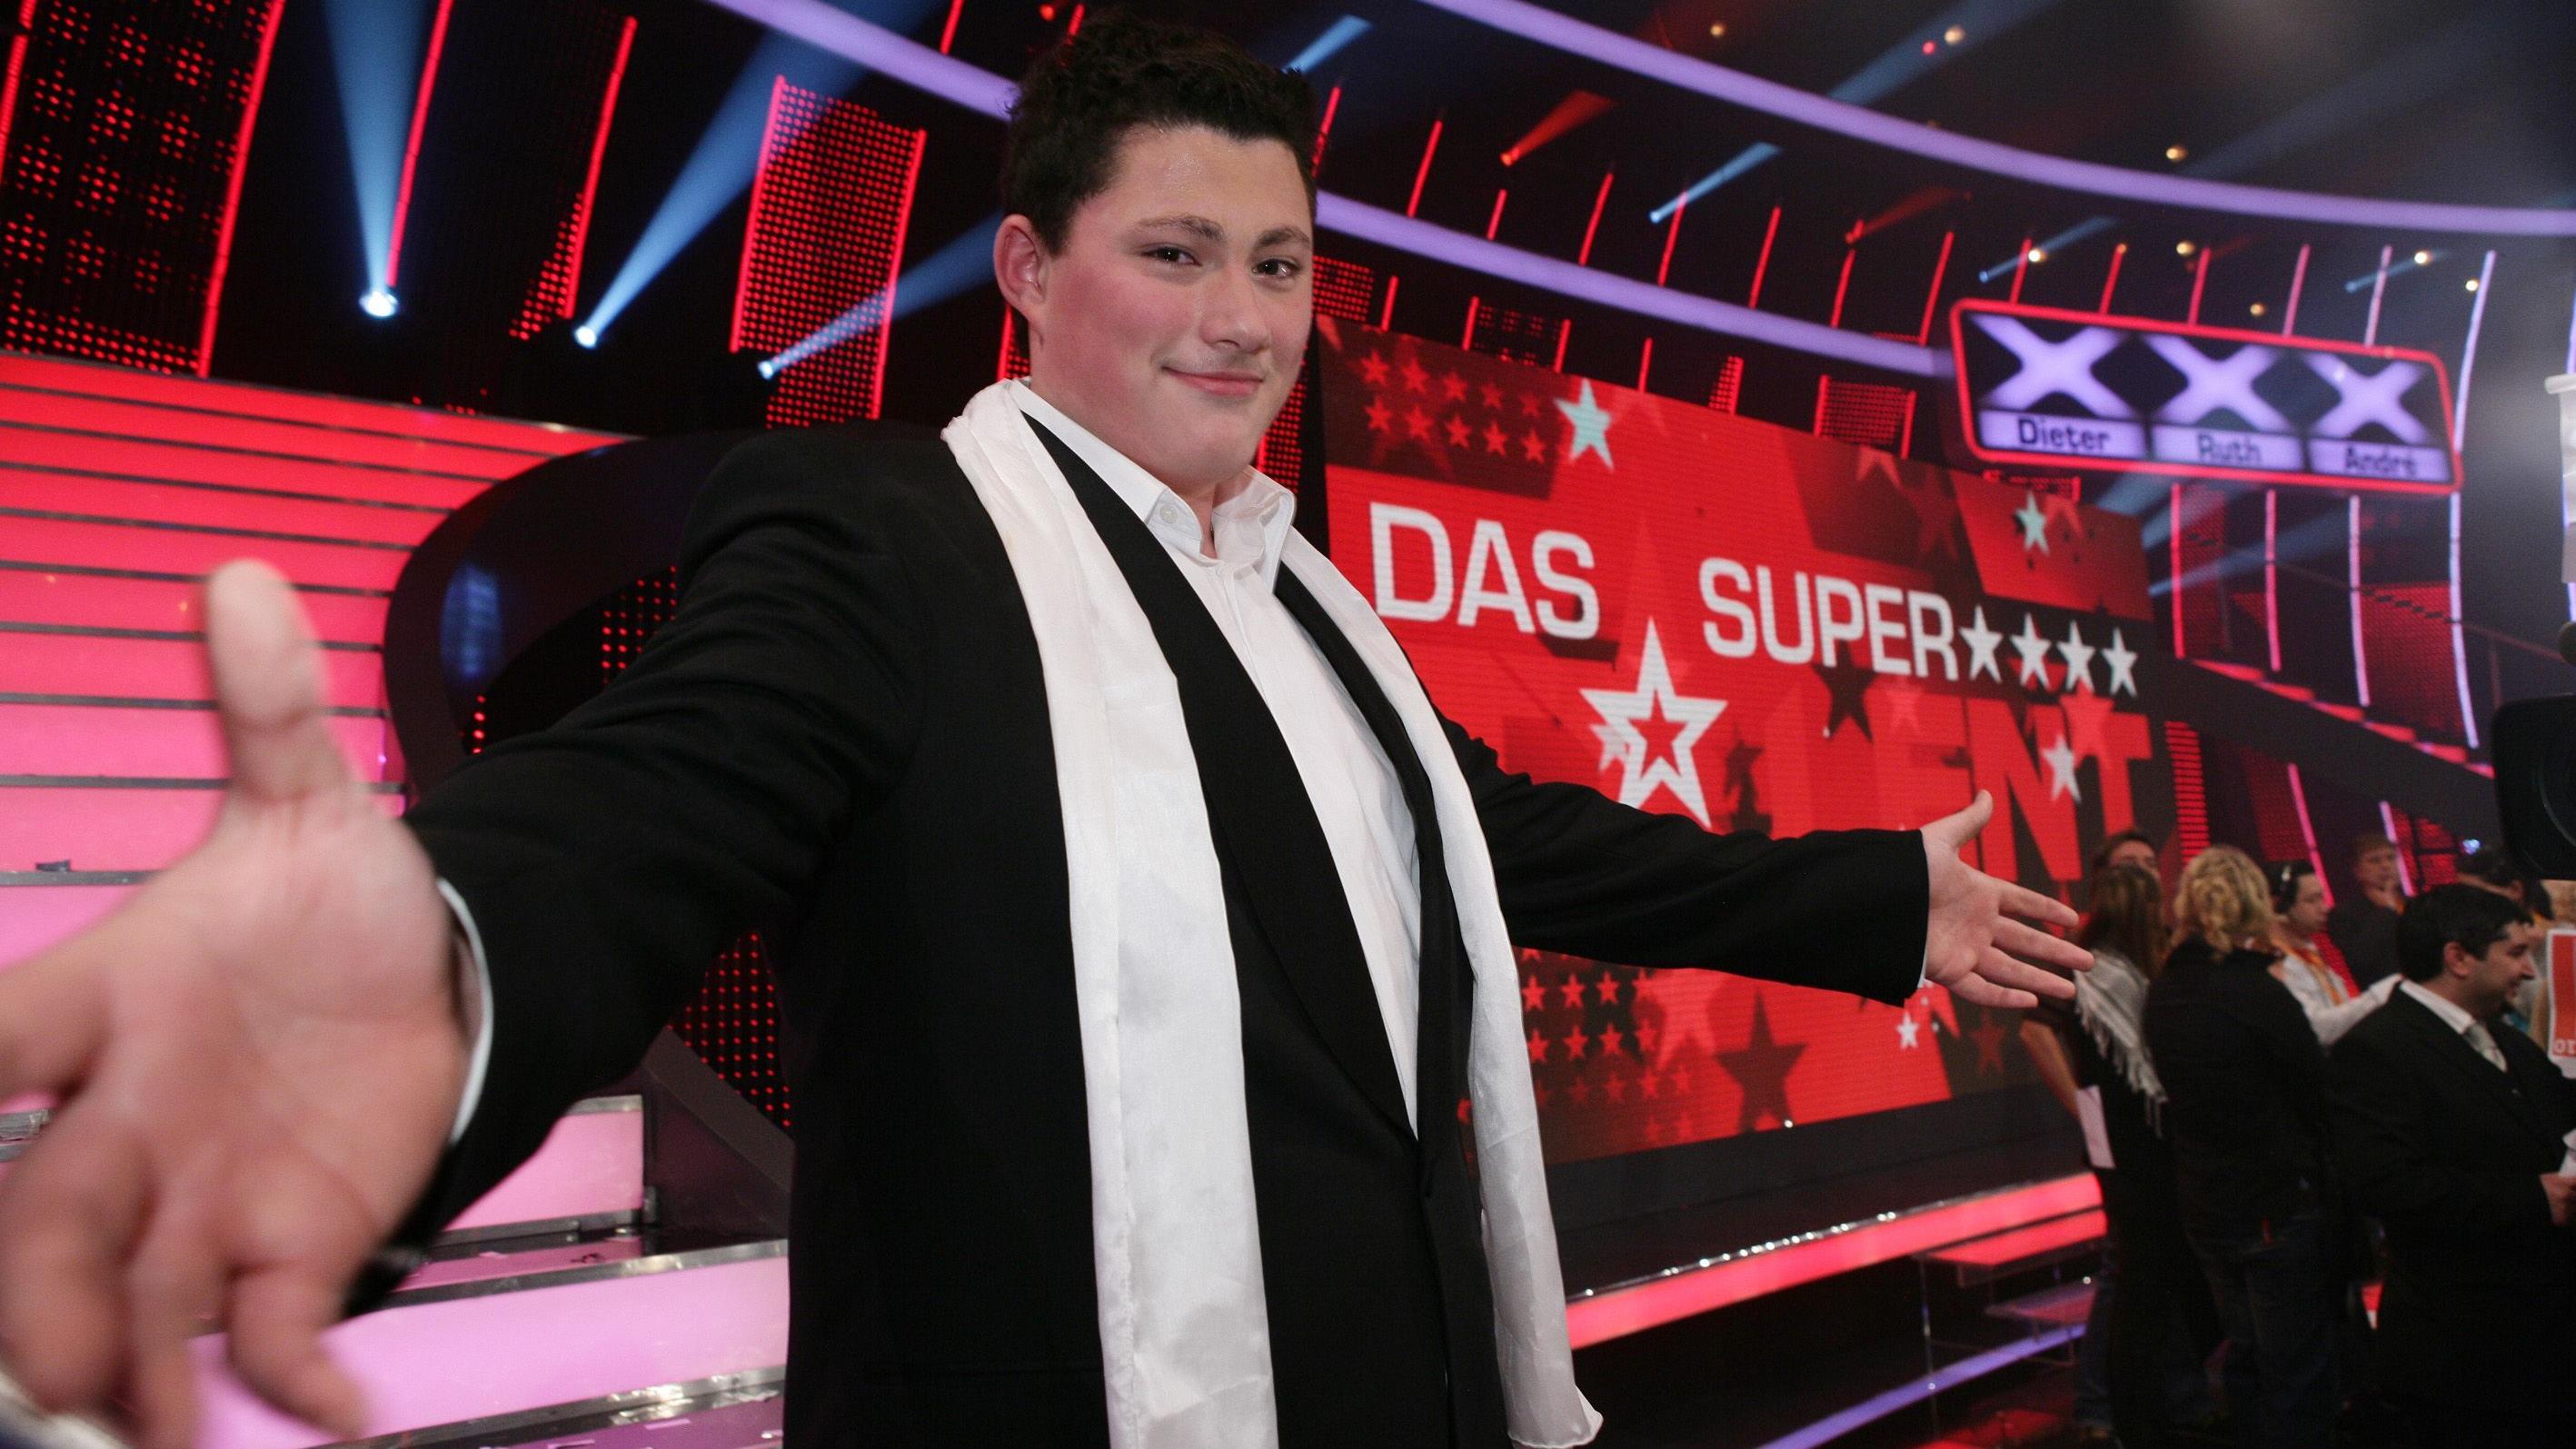 Ricardo Marinello holt sich den Titel "Das Supertalent" und gewinnt die 100.000 Euro Siegprämie.